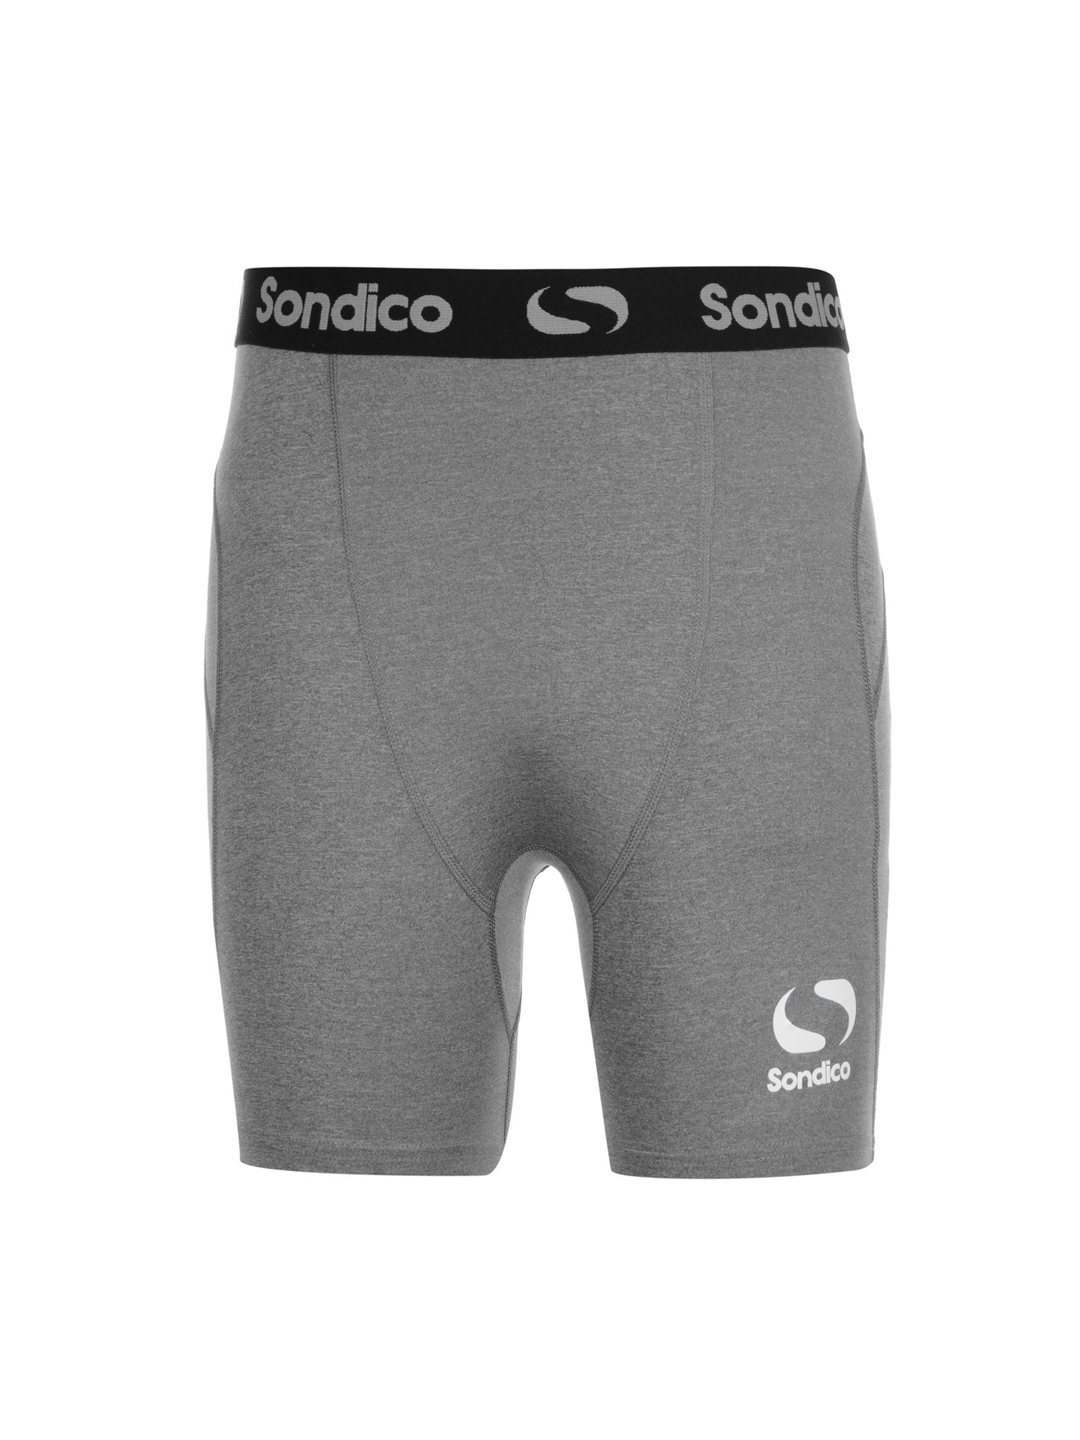 sondico under shorts